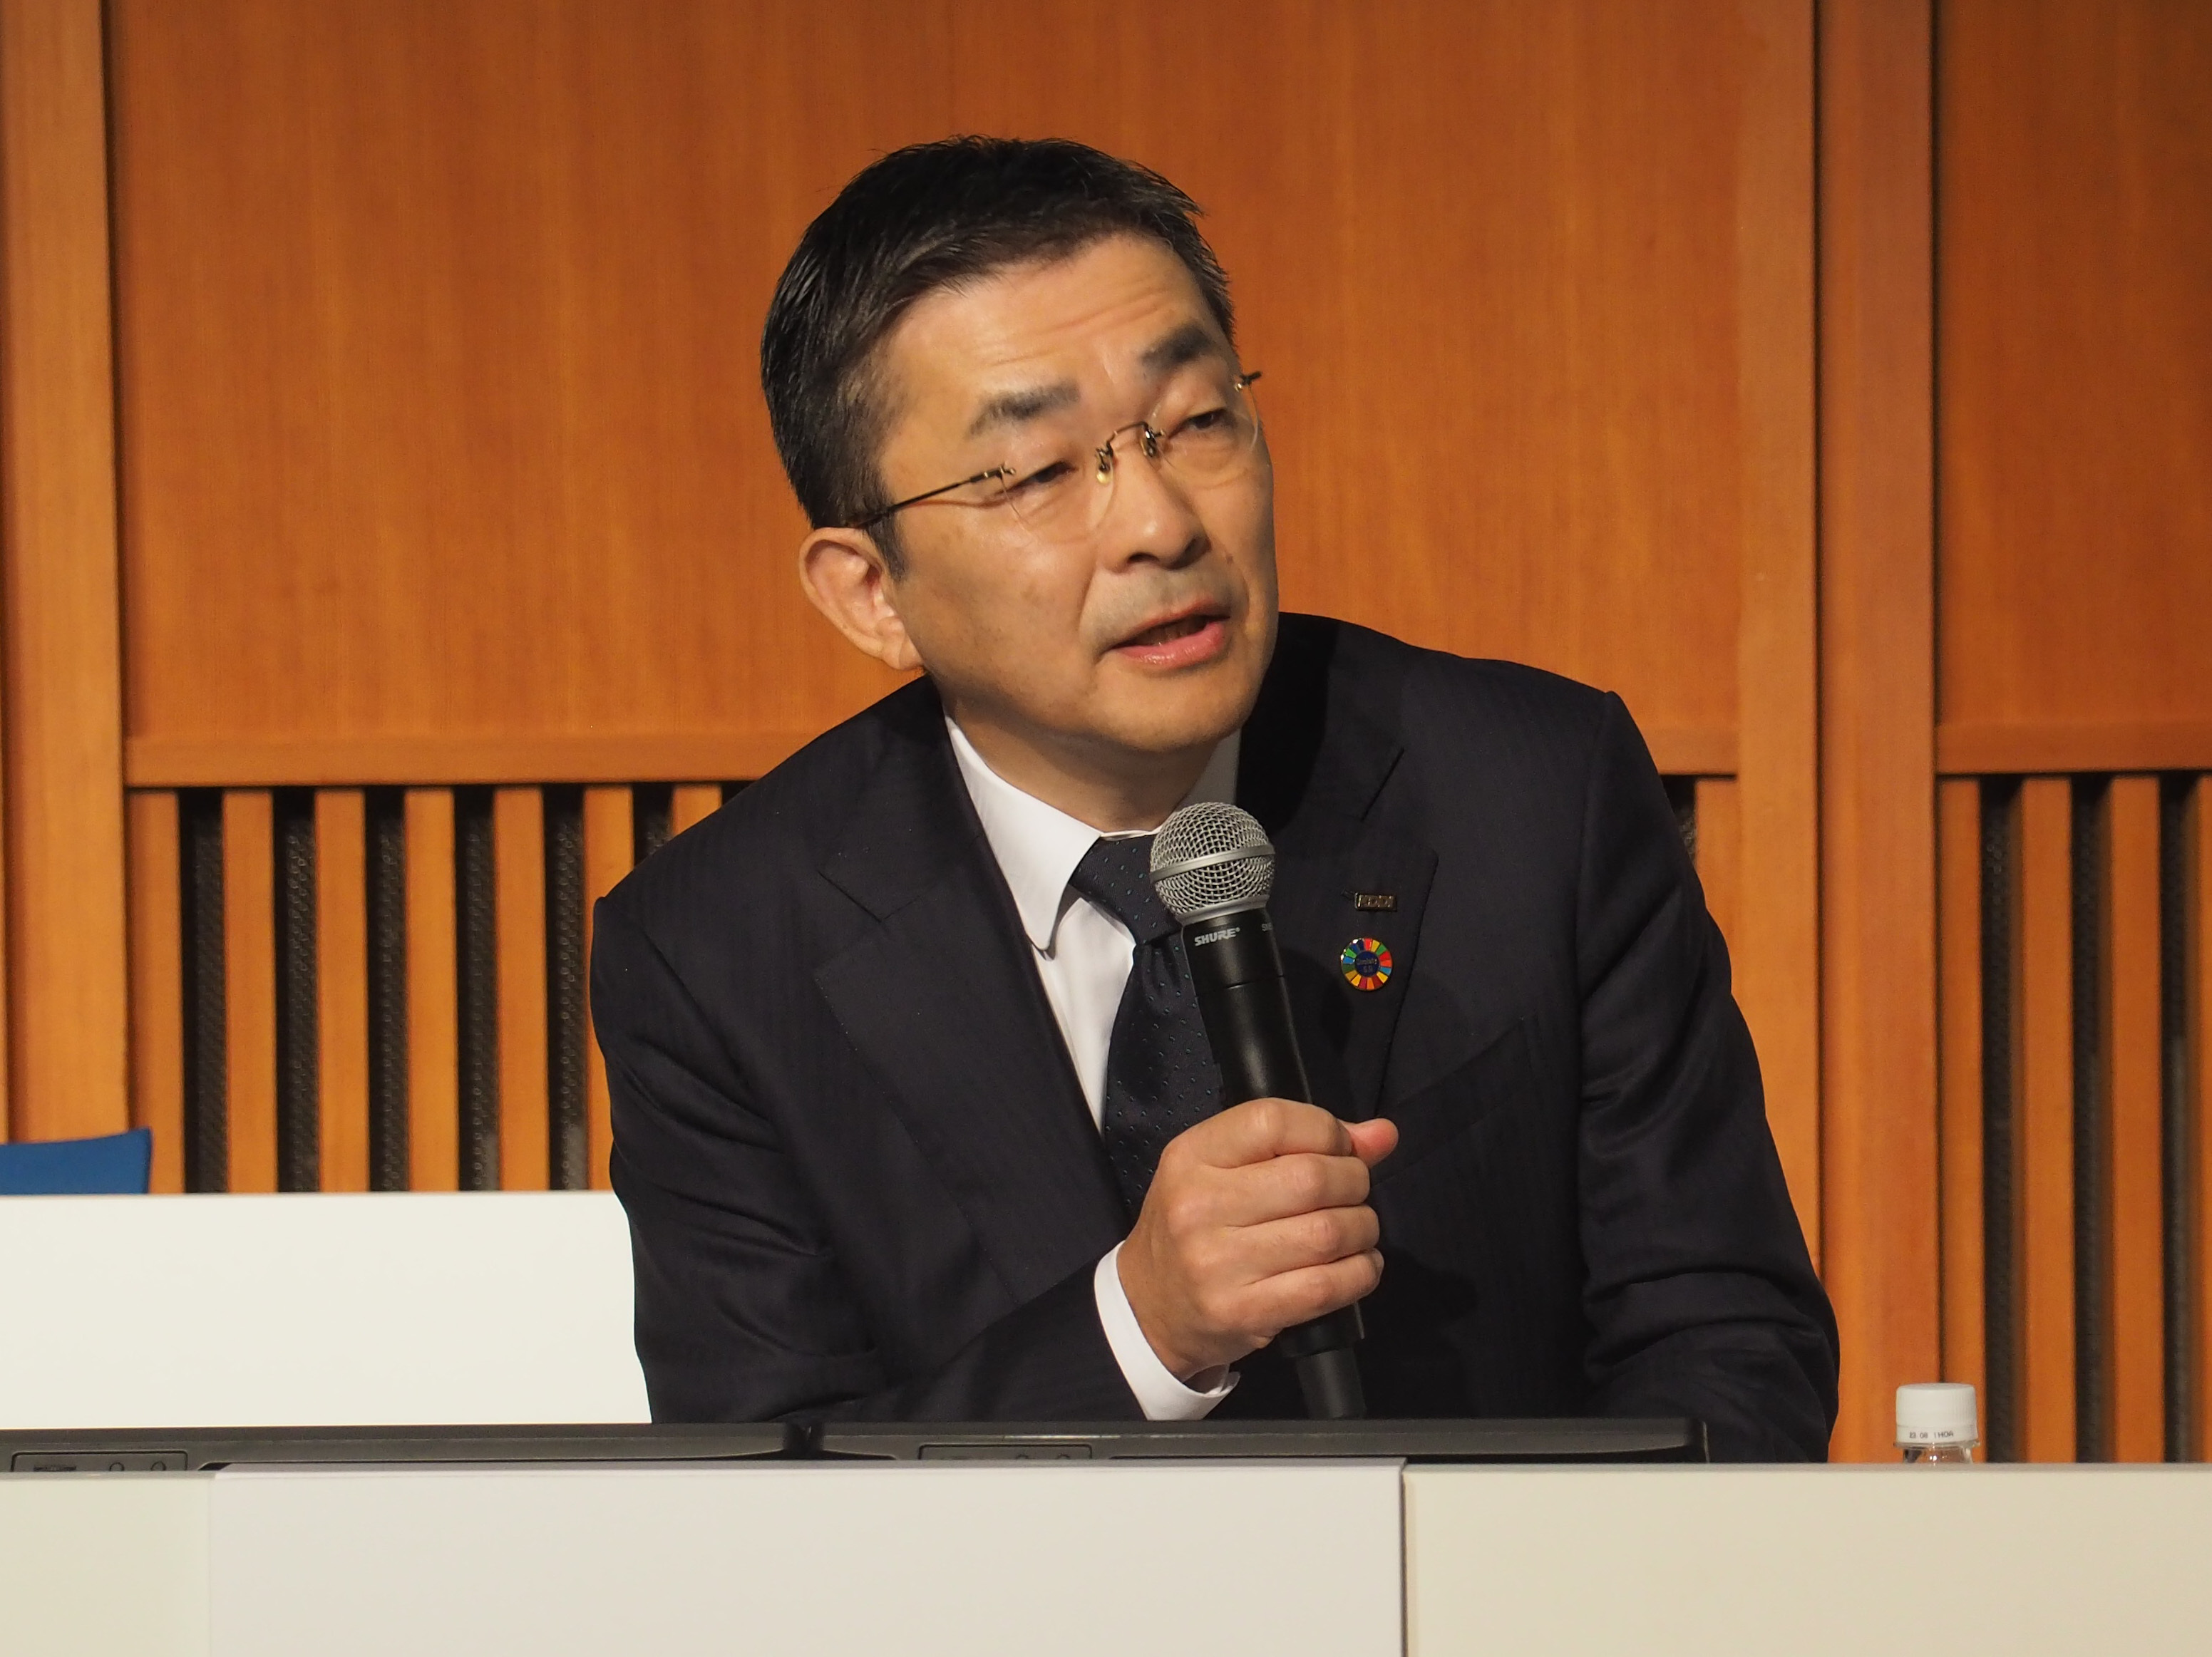 高橋氏は2022年11月2日の決算説明会で、プラチナバンドの再割り当てに関連して楽天モバイルのエリア対策に言及。4Gのエリア拡大にローミングを活用することを提案していた